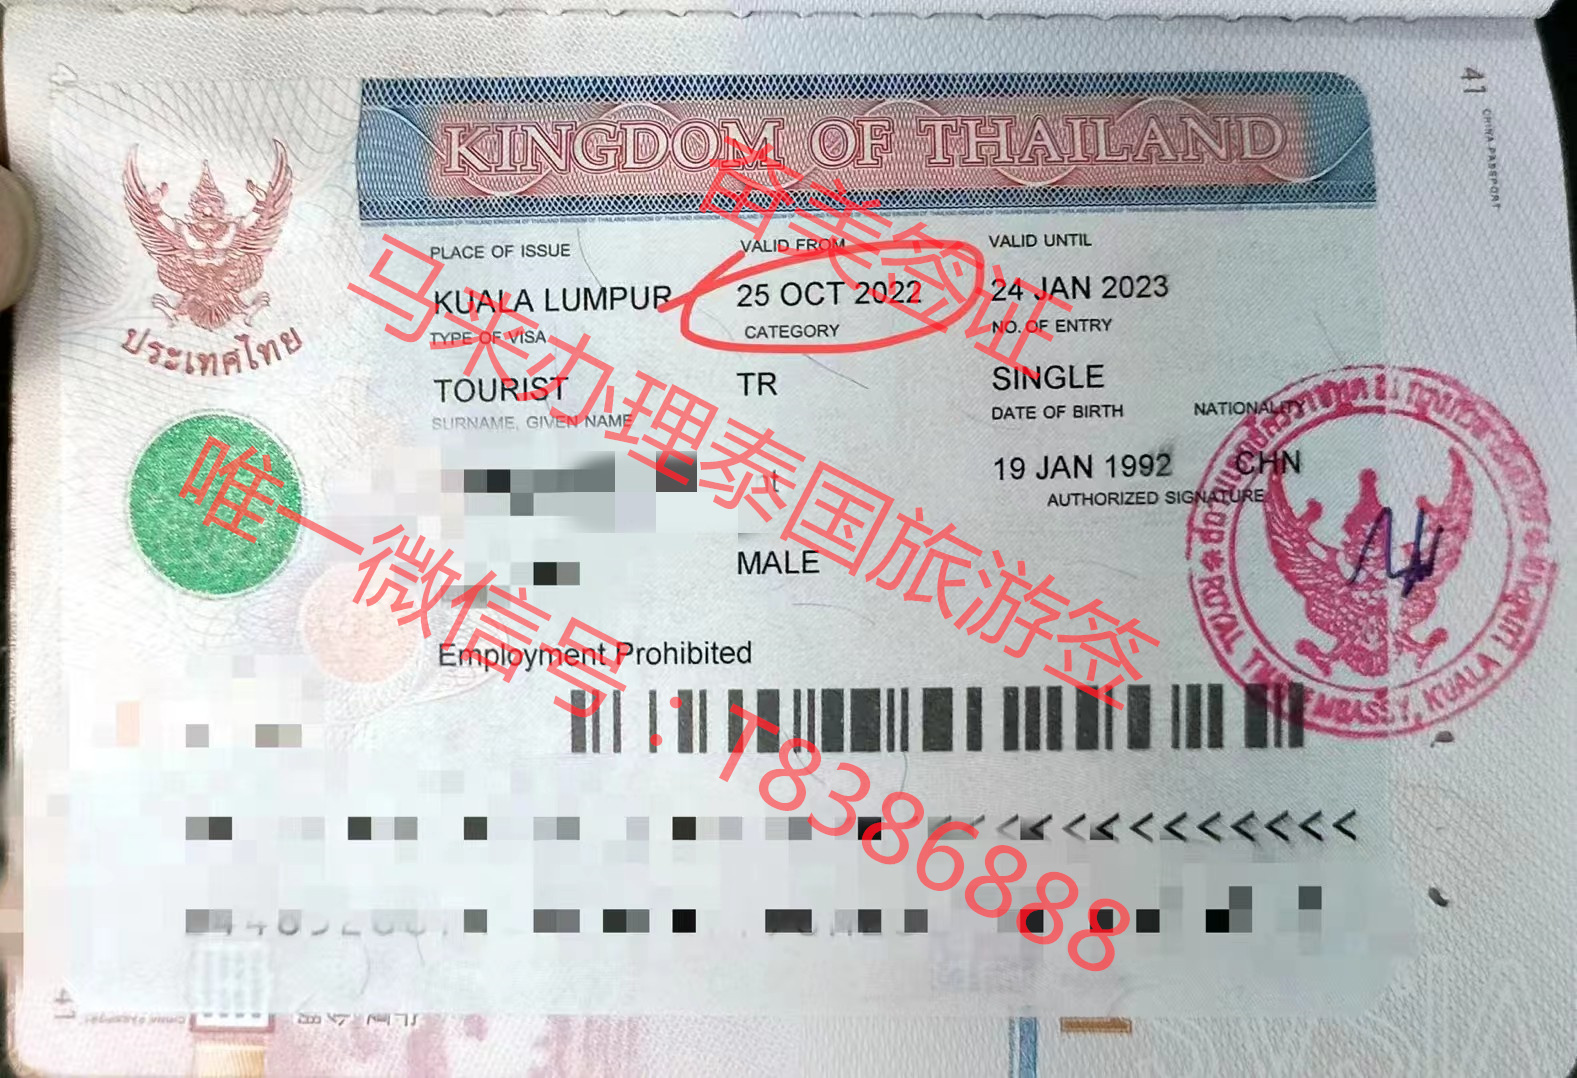 去泰国旅游需要办理签证吗？